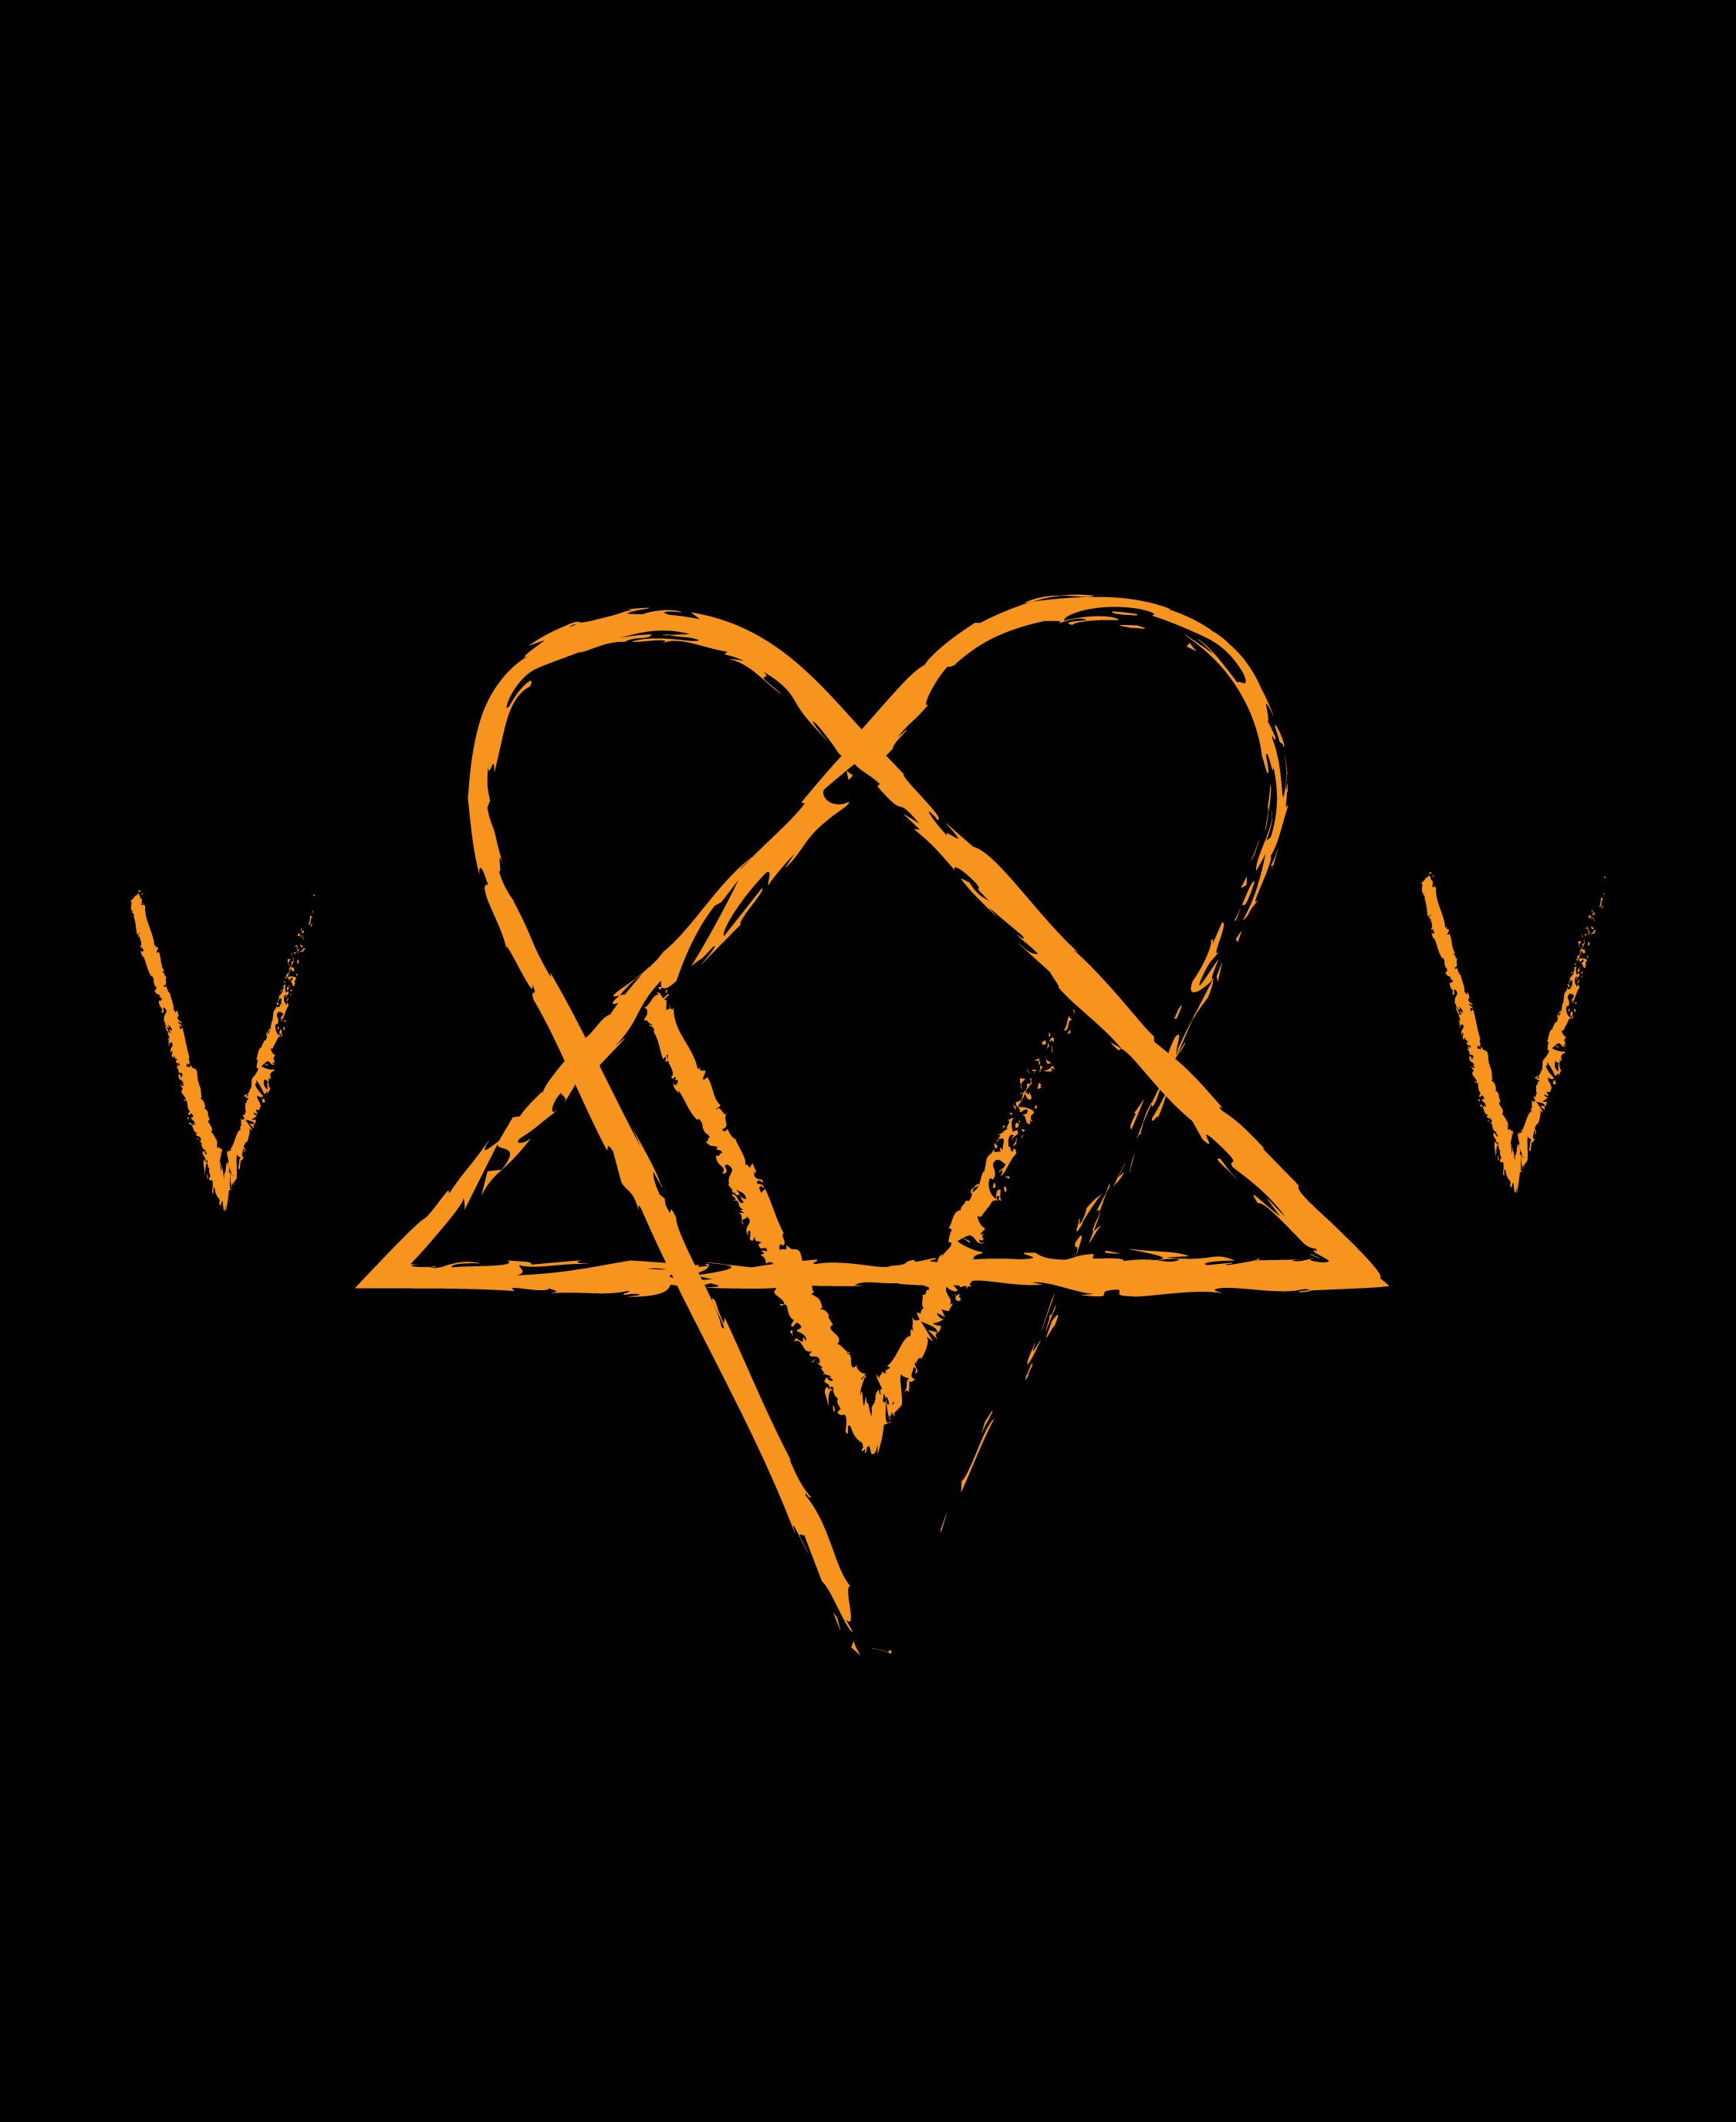 VV x Rock Sound T-Shirt